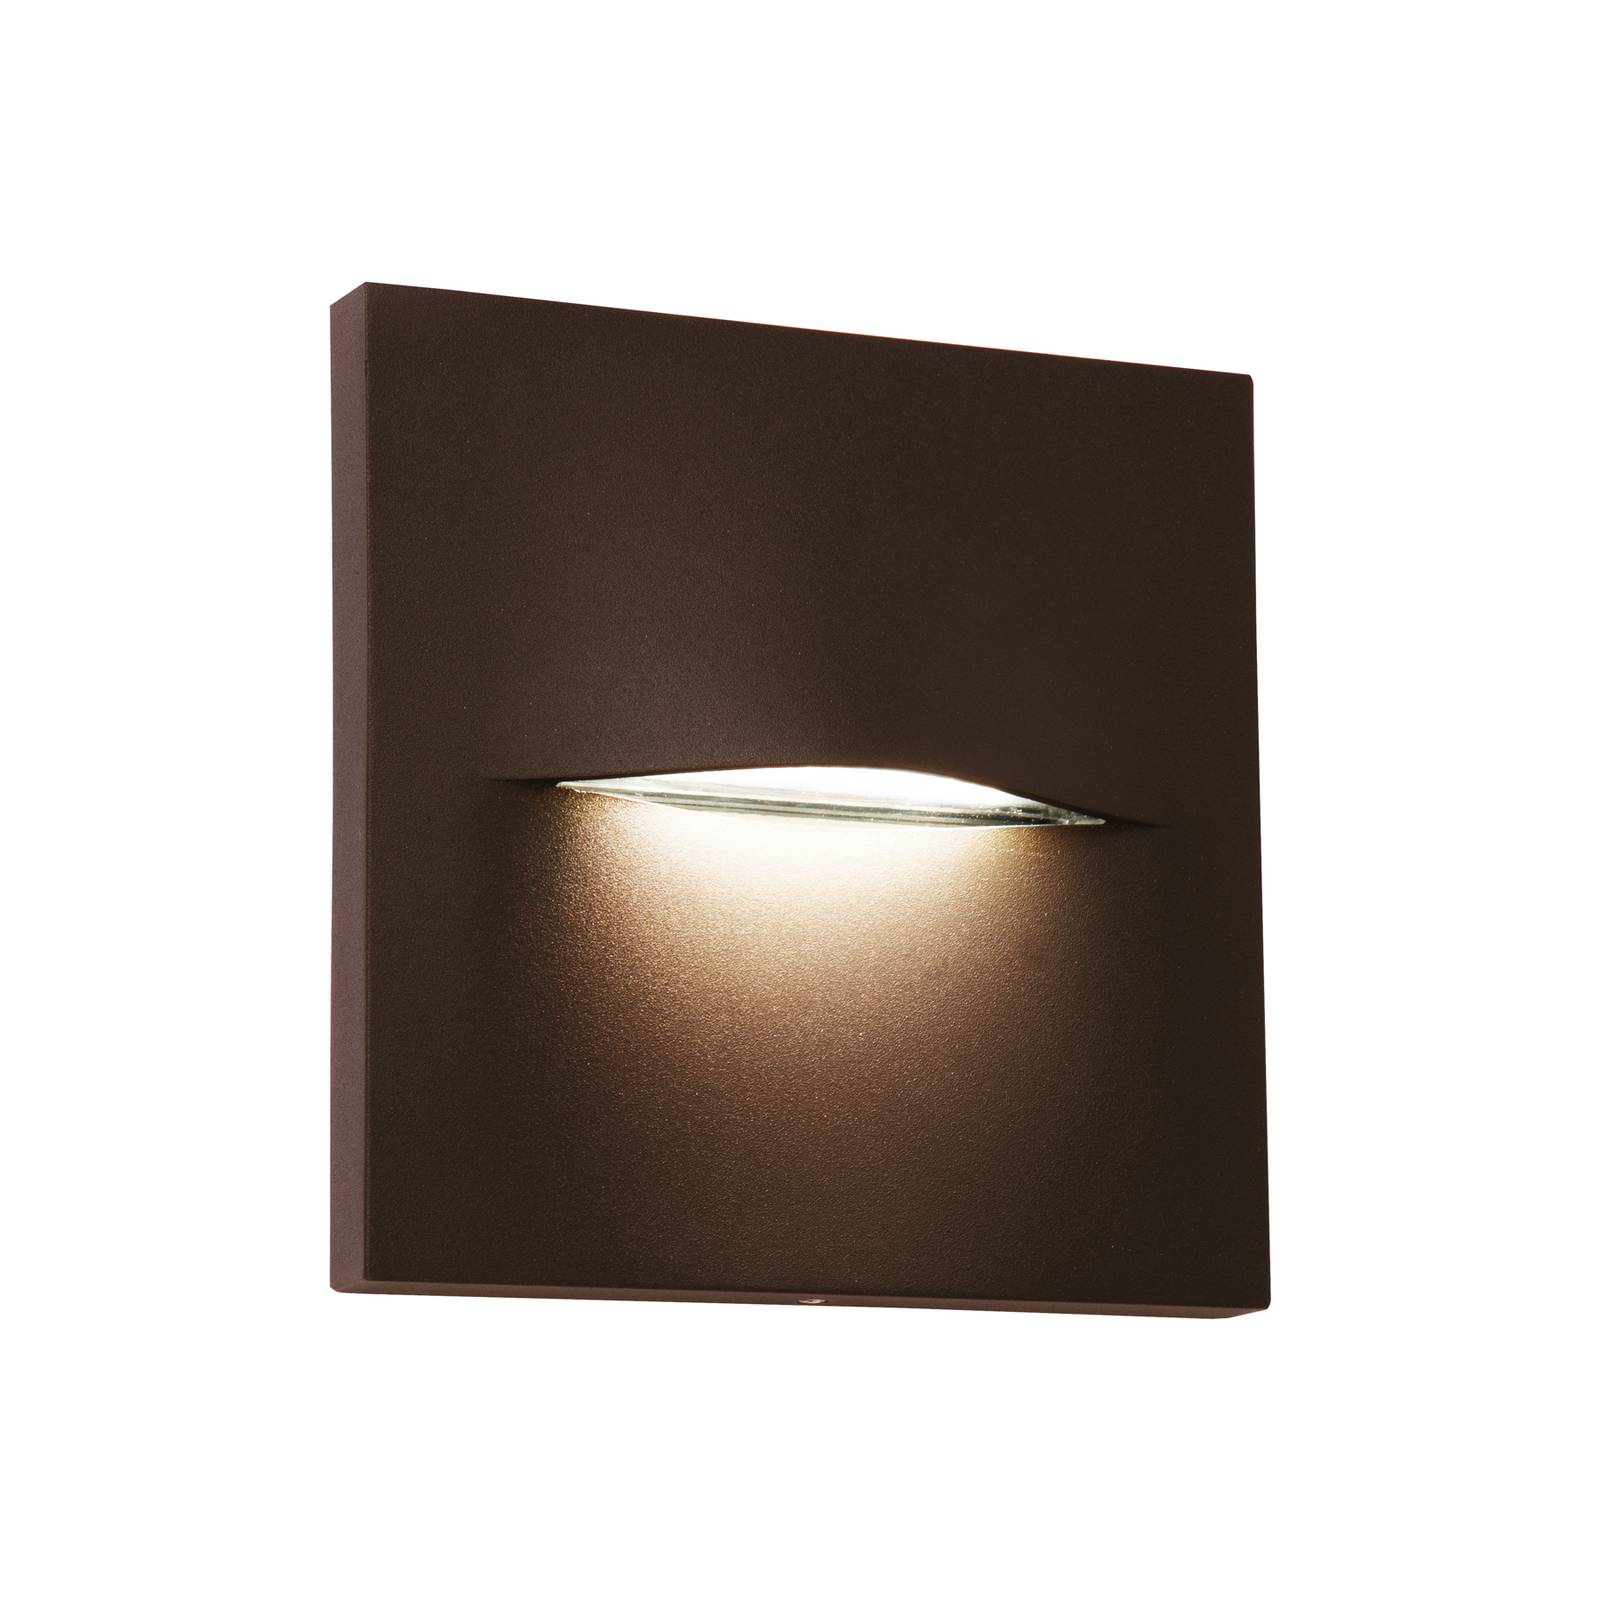 LED udendørs væglampe Vita rustbrun 14 x 14 cm